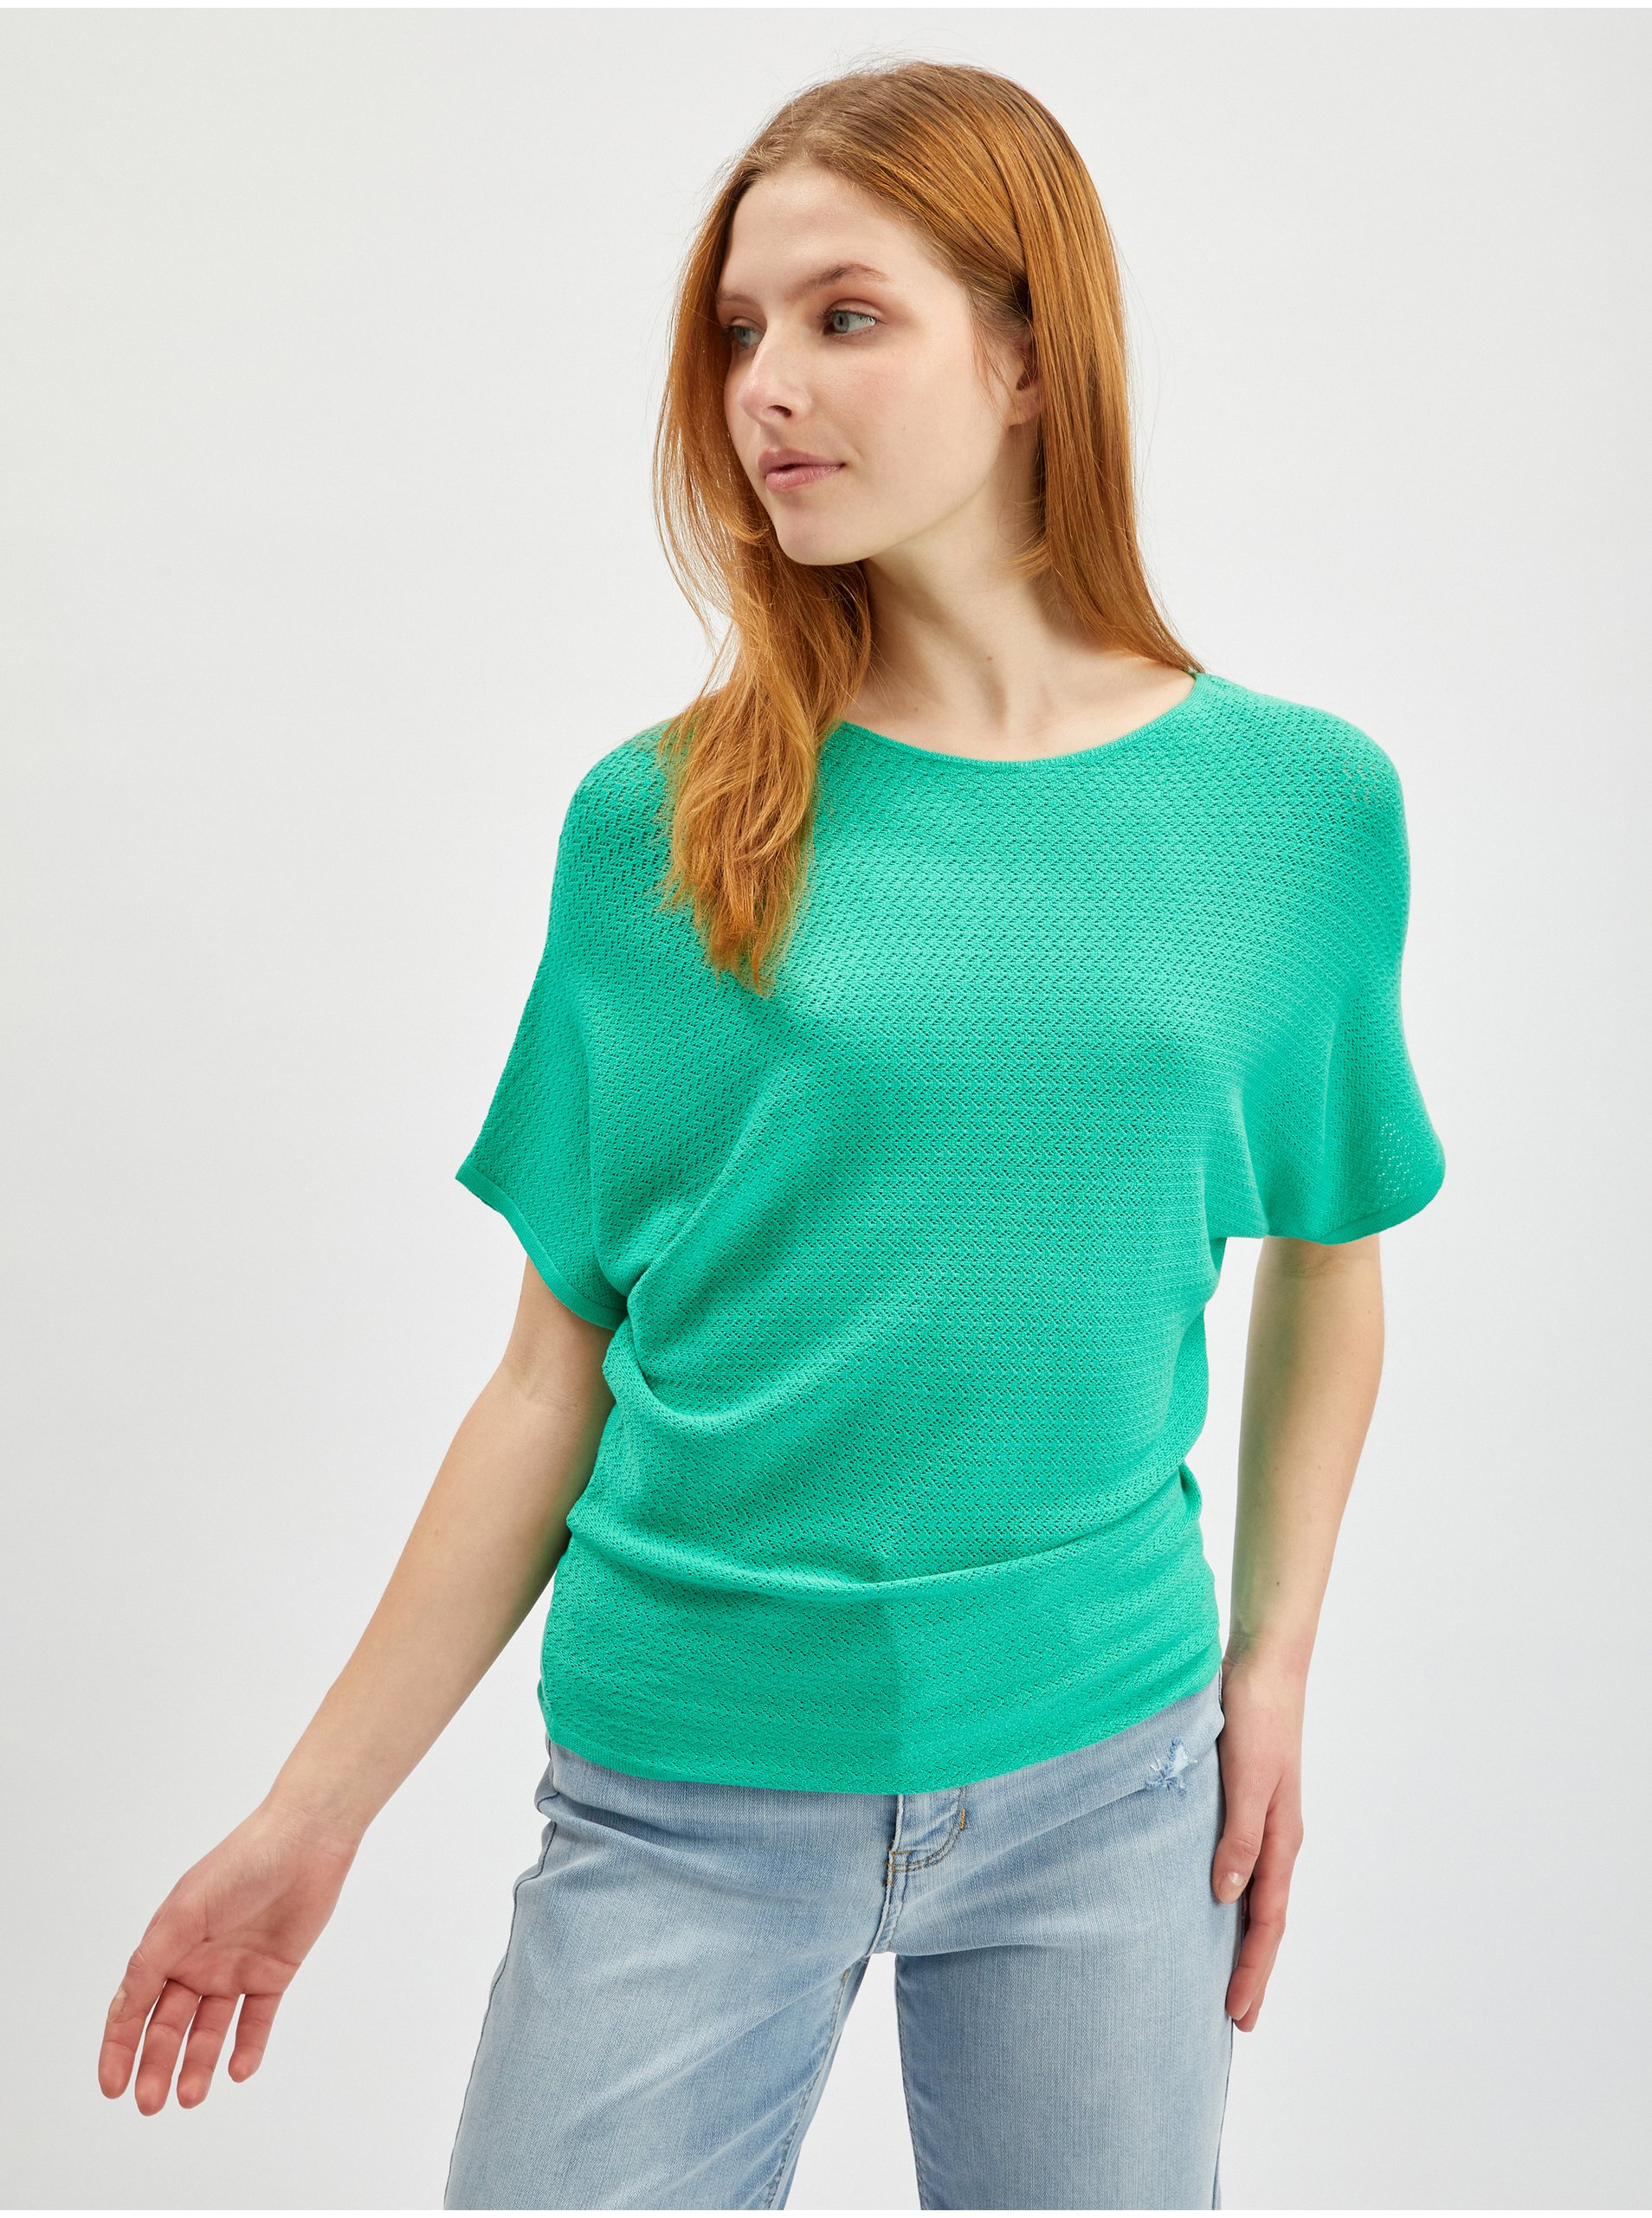 Lacno Svetlo zelený dámsky sveter s krátkym rukávom ORSAY